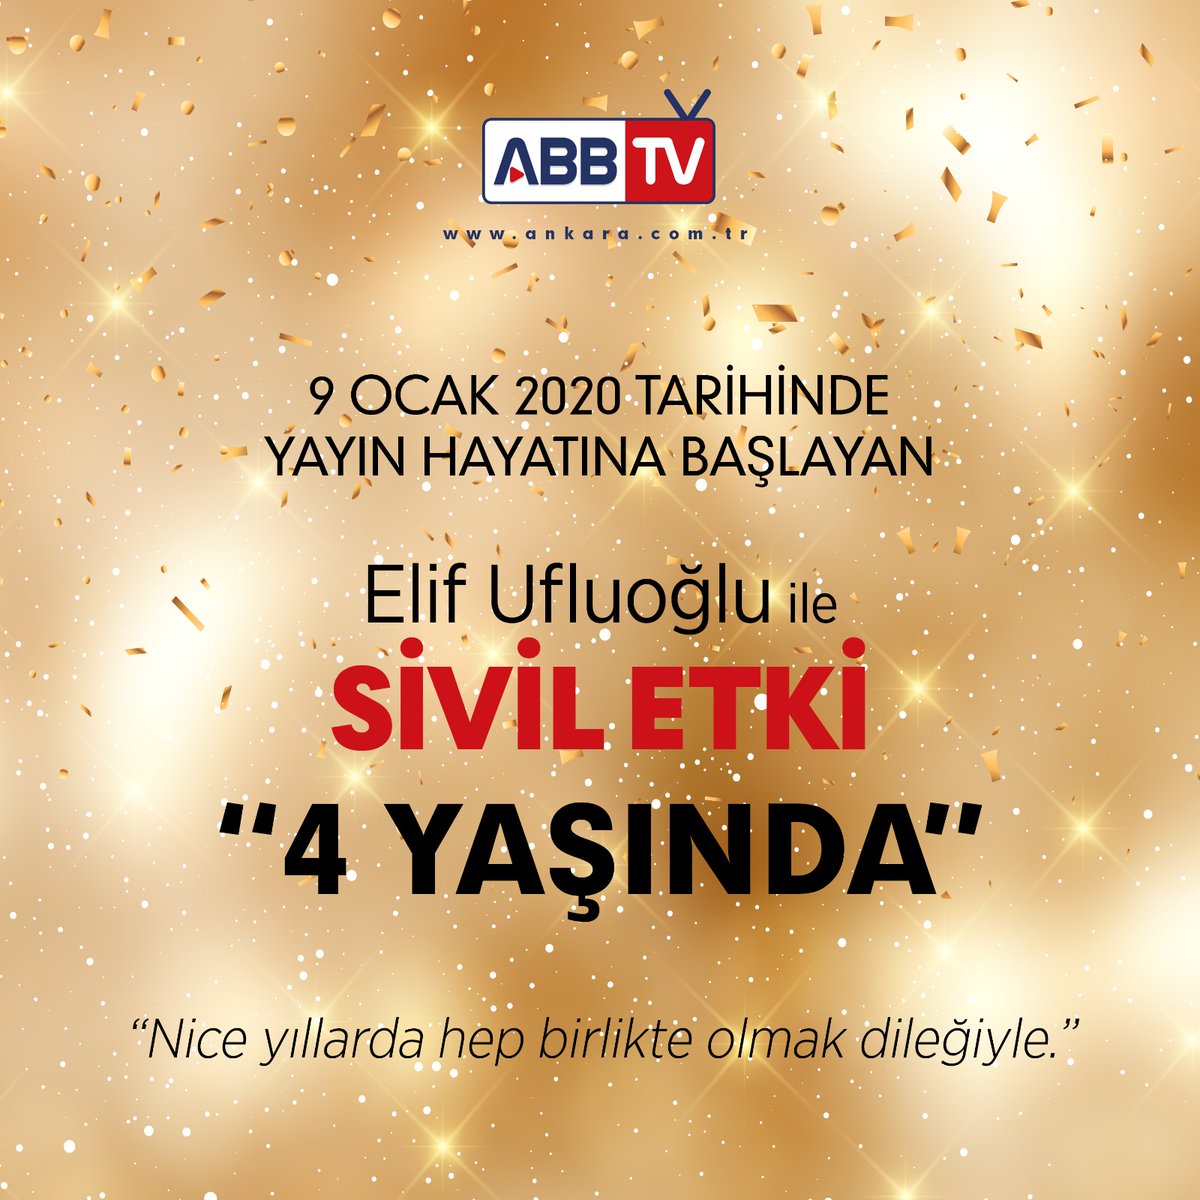 9 Ocak 2020 tarihinde yayın hayatına başlayan, Elif Ufluoğlu’nun hazırlayıp sunduğu “Elif Ufluoğlu ile Sivil Etki”  4 Yaşında... 

#elifufluoğlu #siviletki #elifufluoğluilesiviletki #ankarabüyükşehirbelediyesi #abb #abbtv #canlıyayın